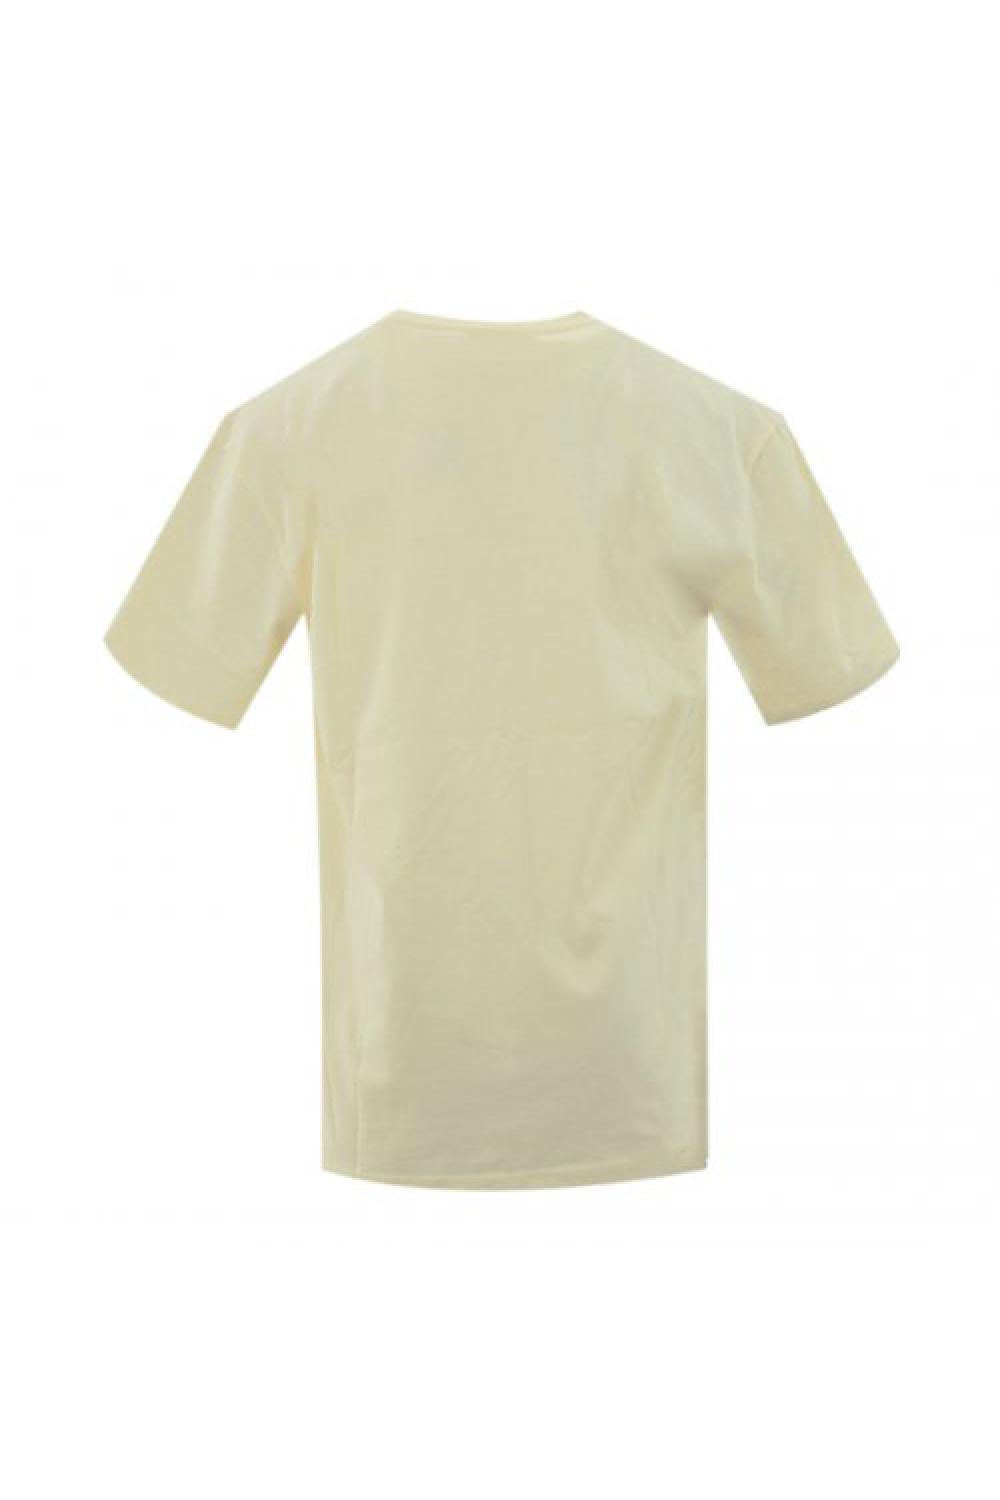 KARL KANI T-shirt Small Signature Unisex - Cream (KU221-001-4)